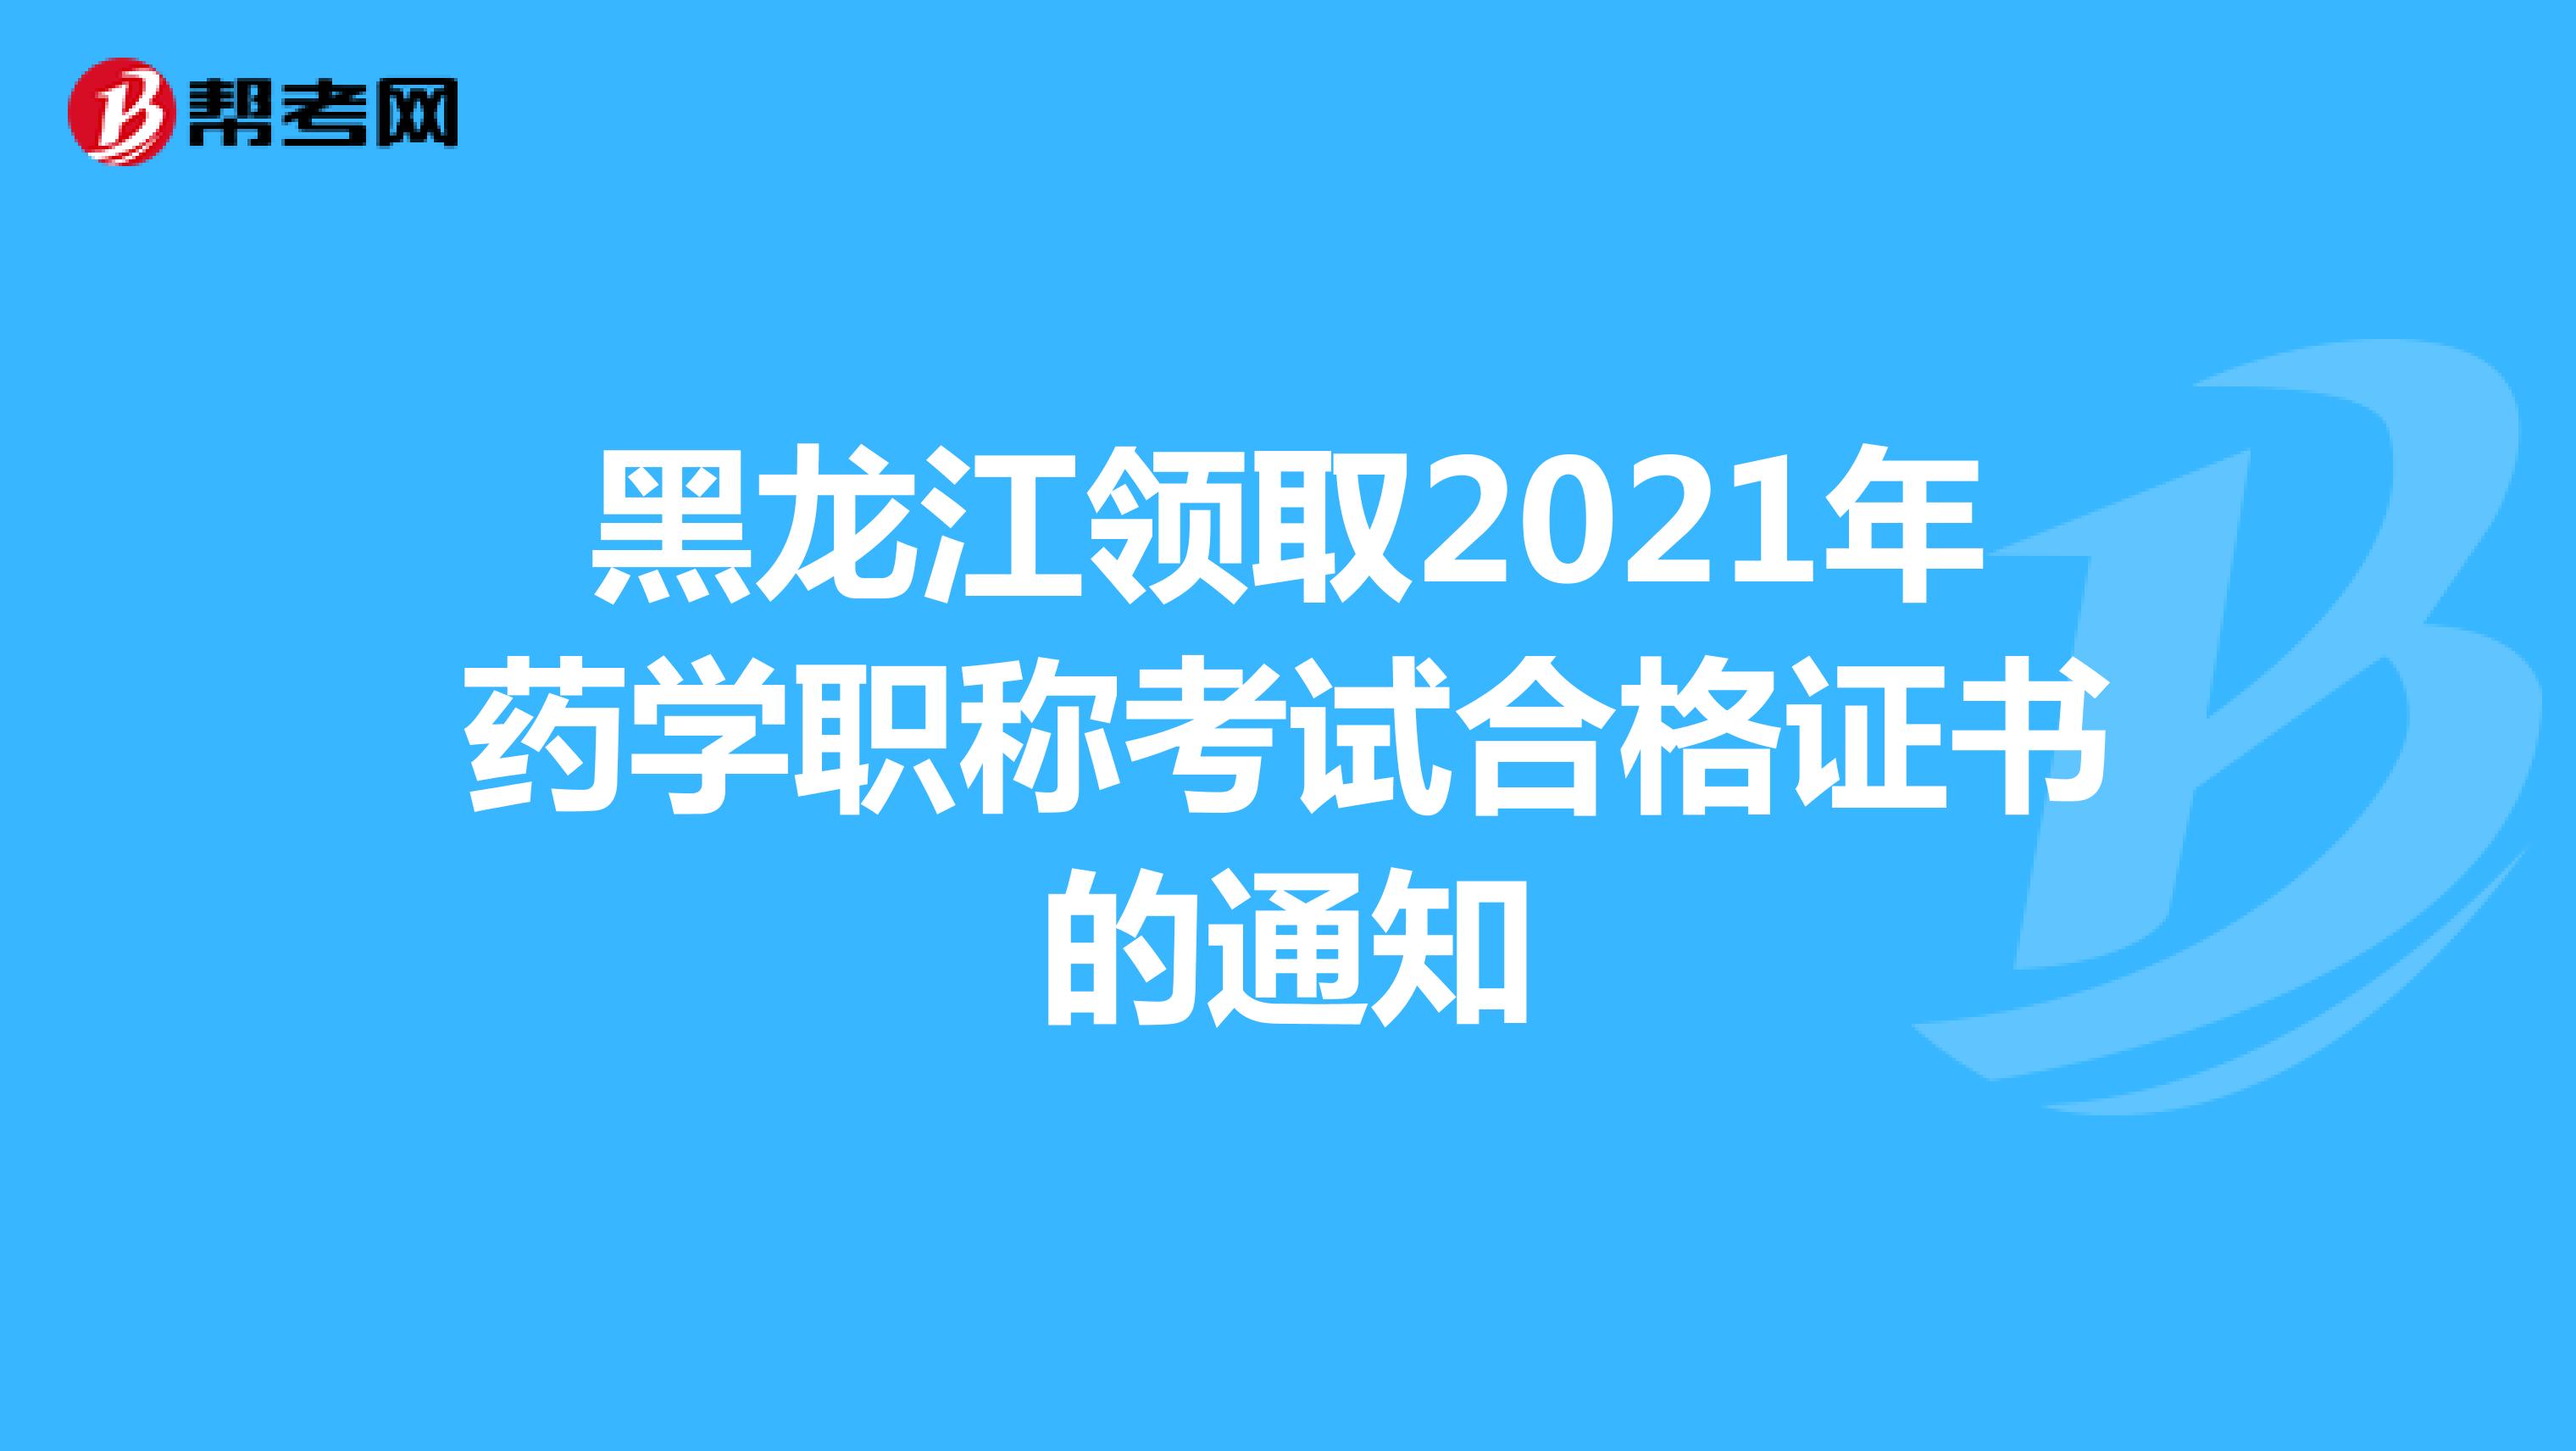 黑龙江领取2021年药学职称考试合格证书的通知